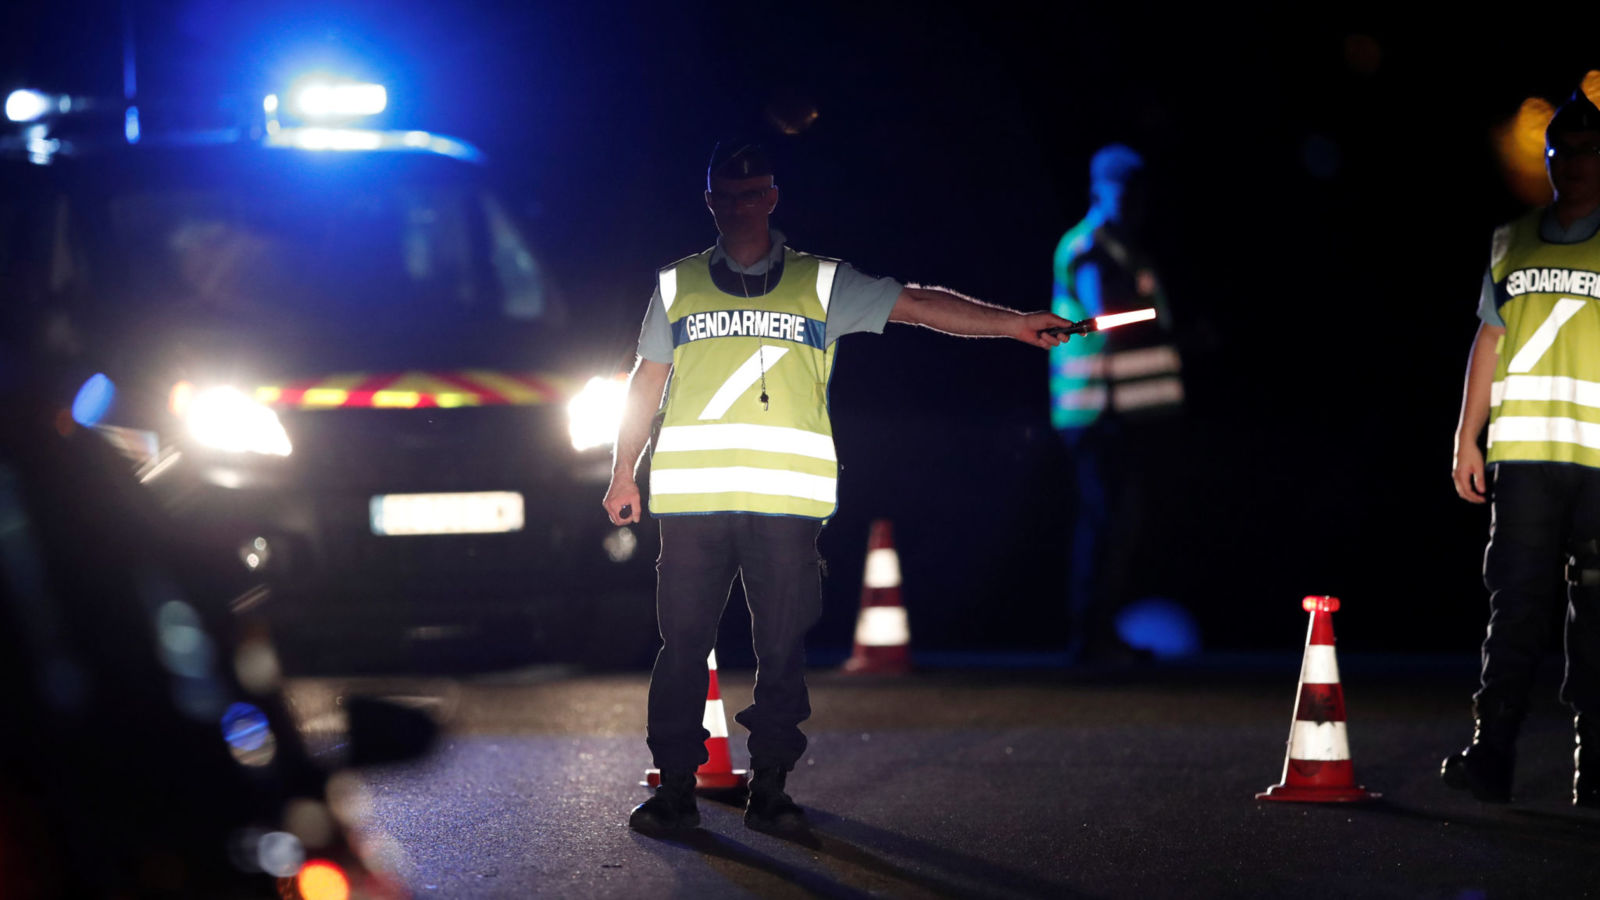 1 کشته و 12 زخمی در پی ورود عمدی ماشین به تراس رستوران در فرانسه